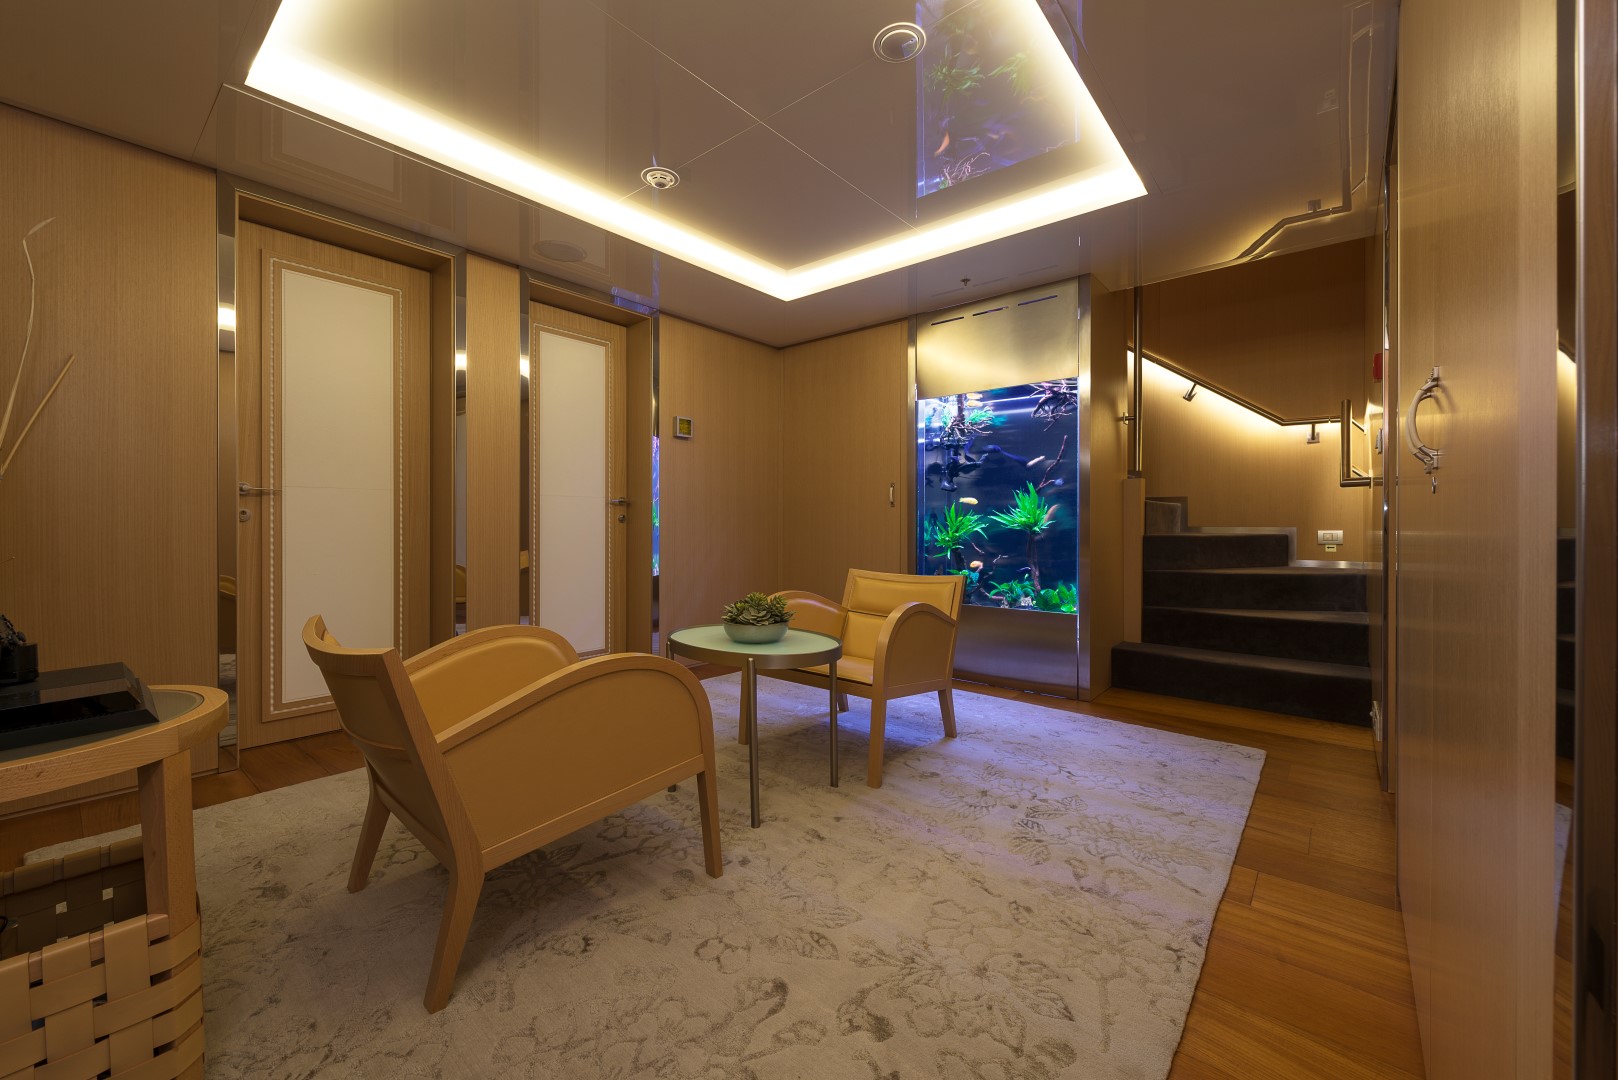 Melik Luxury Aquariums: acquari per yacht di lusso